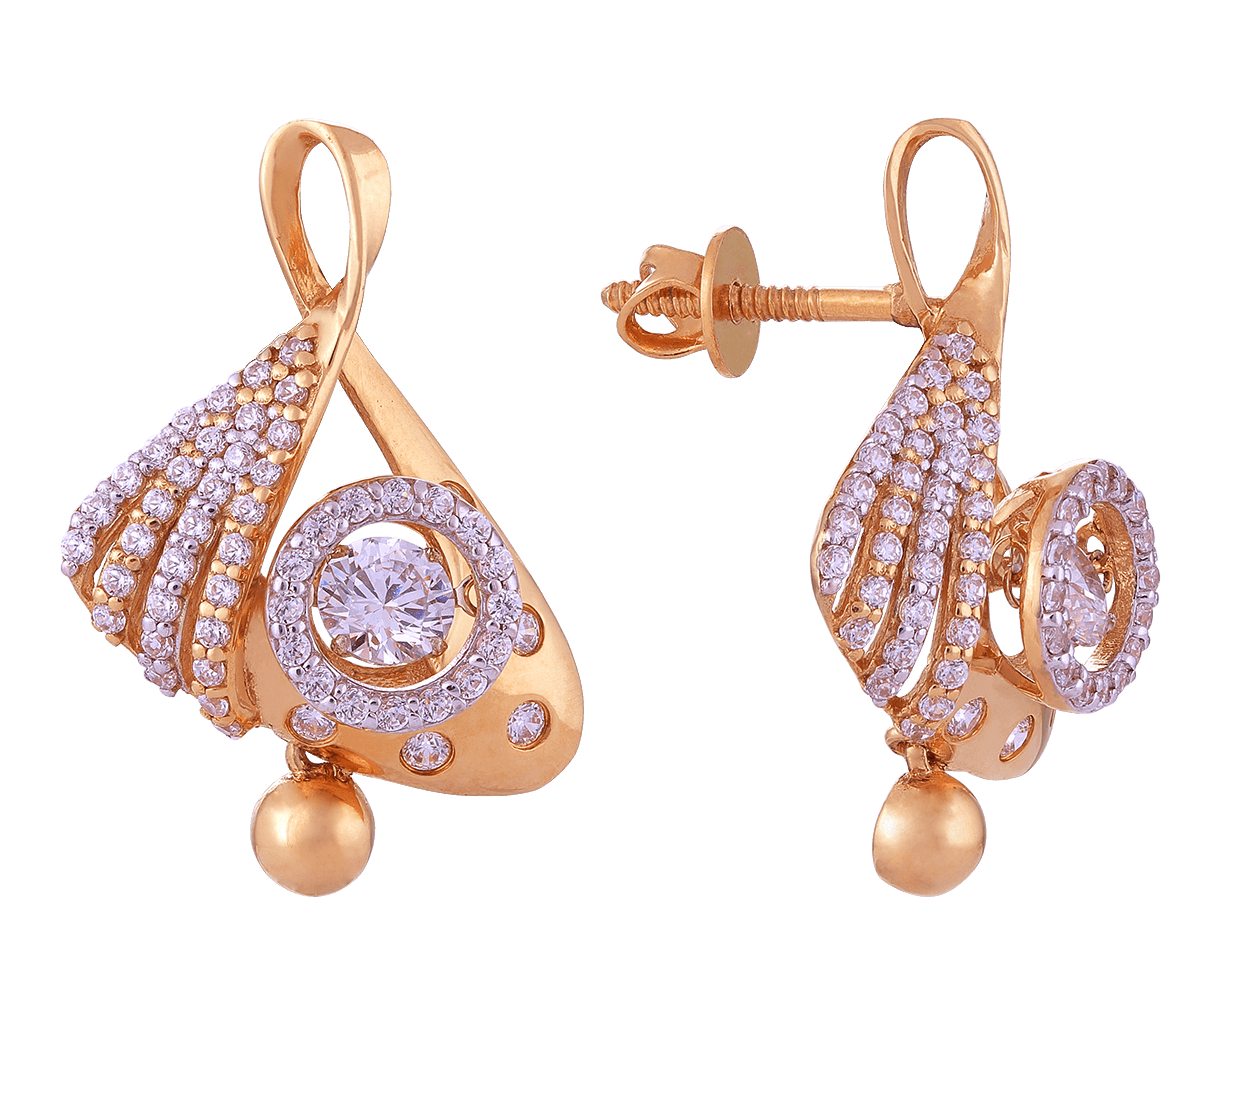 Buy Joyalukkas 22k Gold Earrings for Women Online At Best Price @ Tata CLiQ-sgquangbinhtourist.com.vn